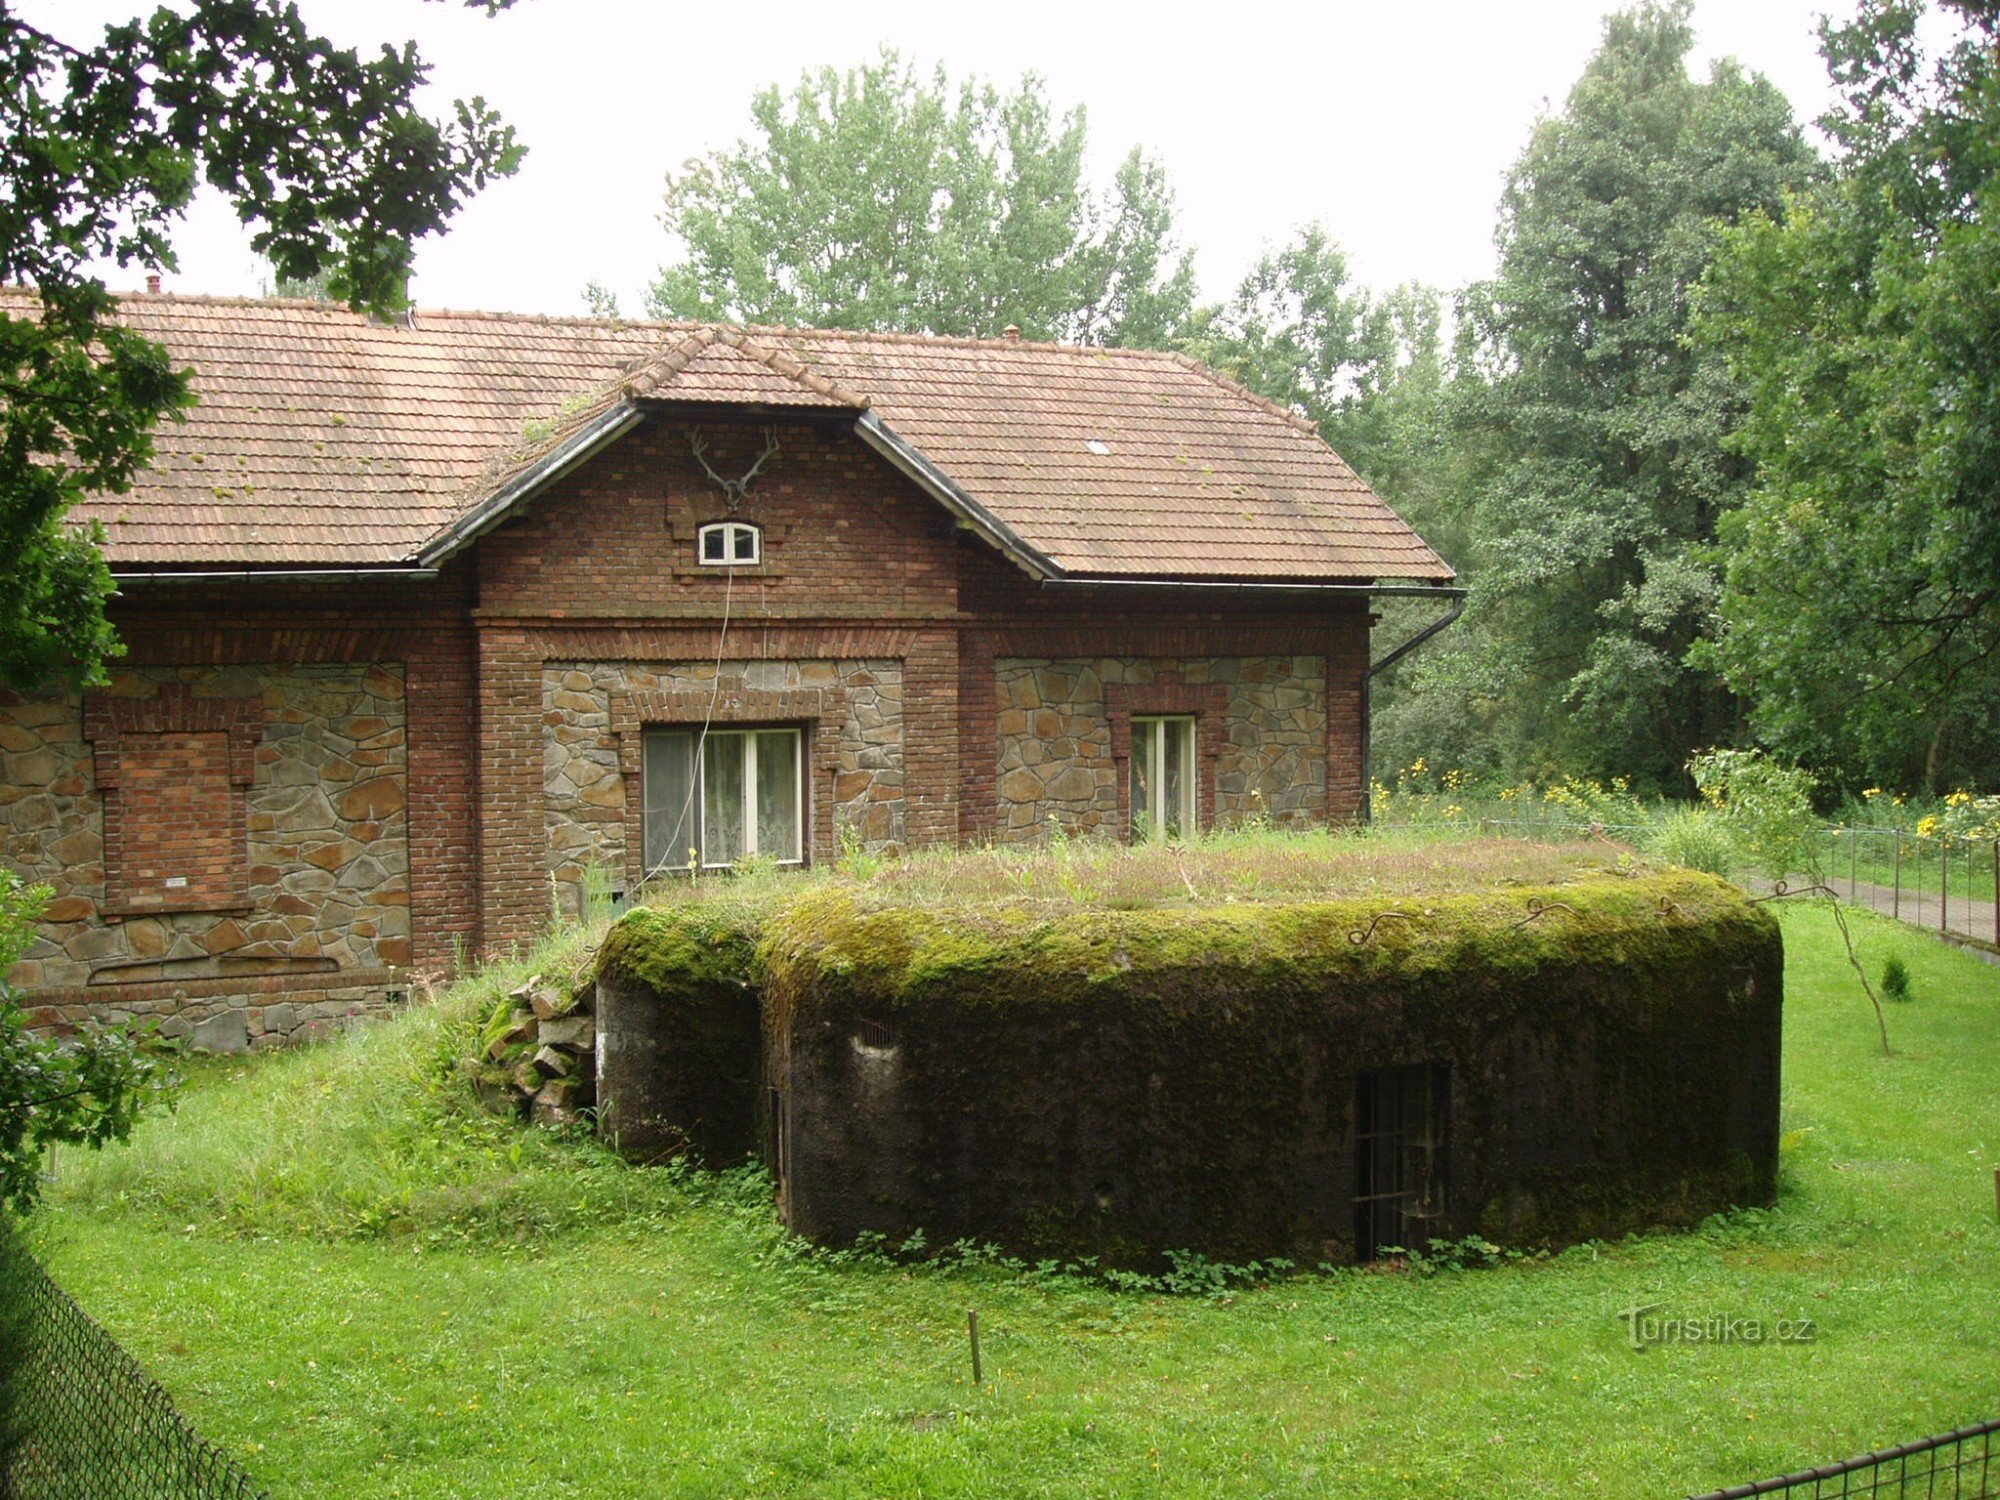 Lekka fortyfikacja „ŘOPÍK” w ogrodzie rezerwatu zwierzyny łownej w miejscowości Purkrabí koło Chluma koło Třeboně